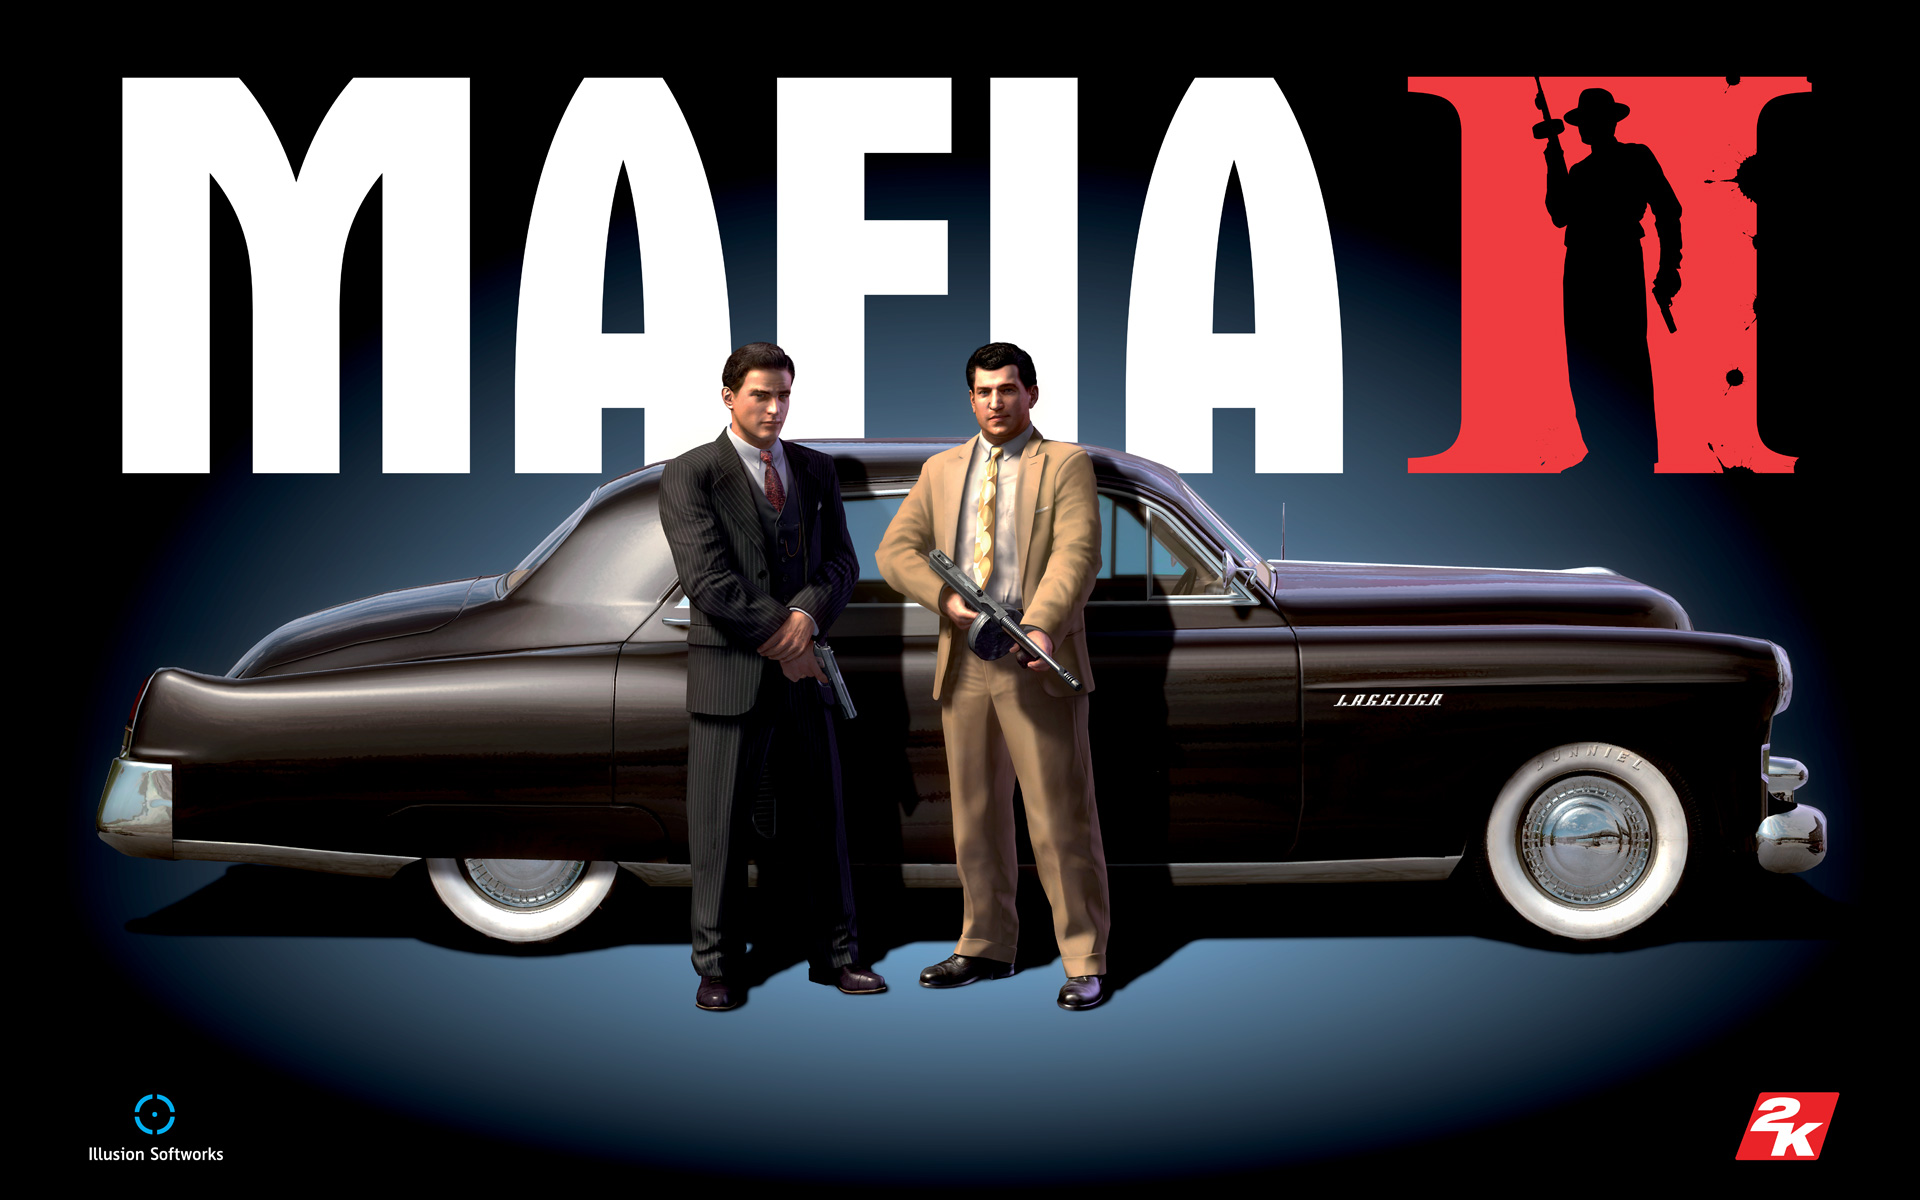 Mafia II – Visite Empire Bay, mas nÃ£o procure um lugar pra morar